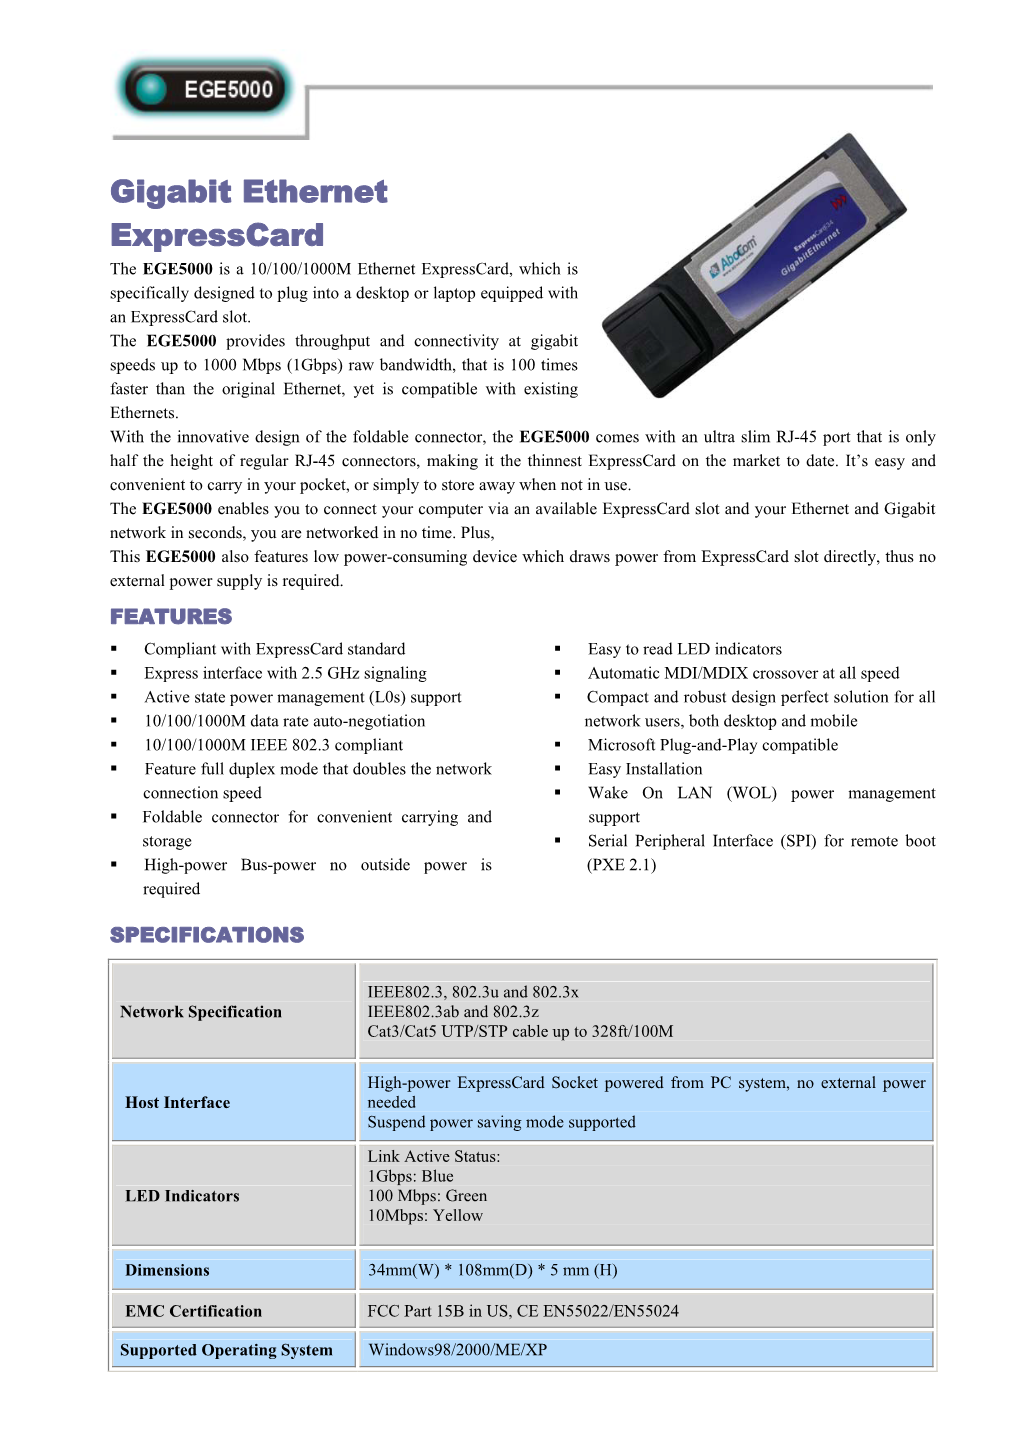 Gigabit Ethernet Expresscard